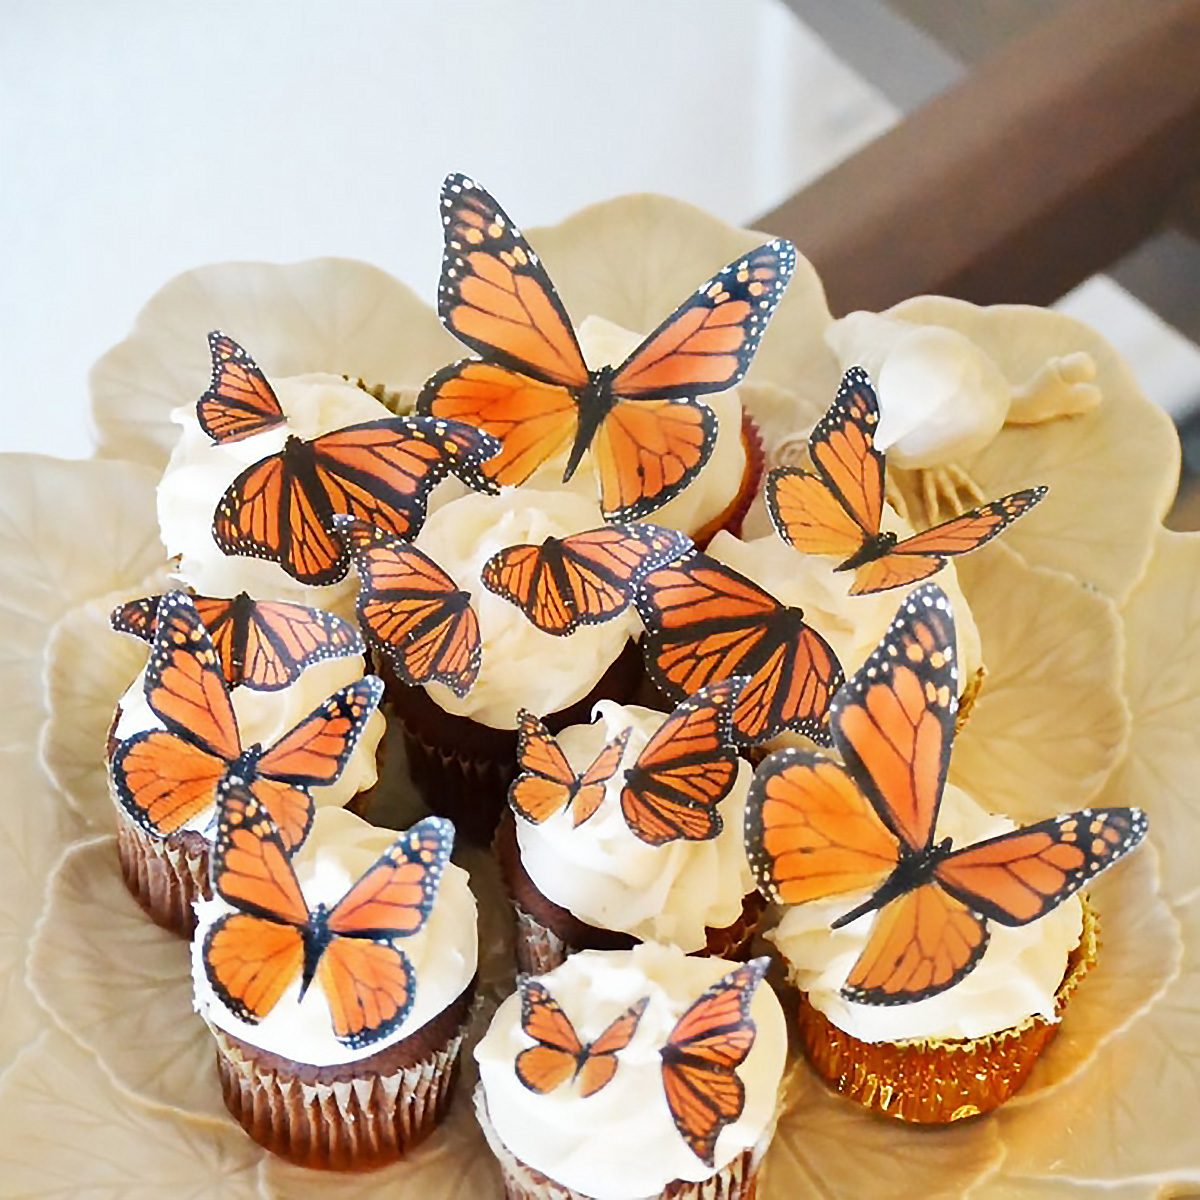 可食用蝴蝶-各种大小的君主-蛋糕和纸杯蛋糕顶部-婚礼蛋糕装饰